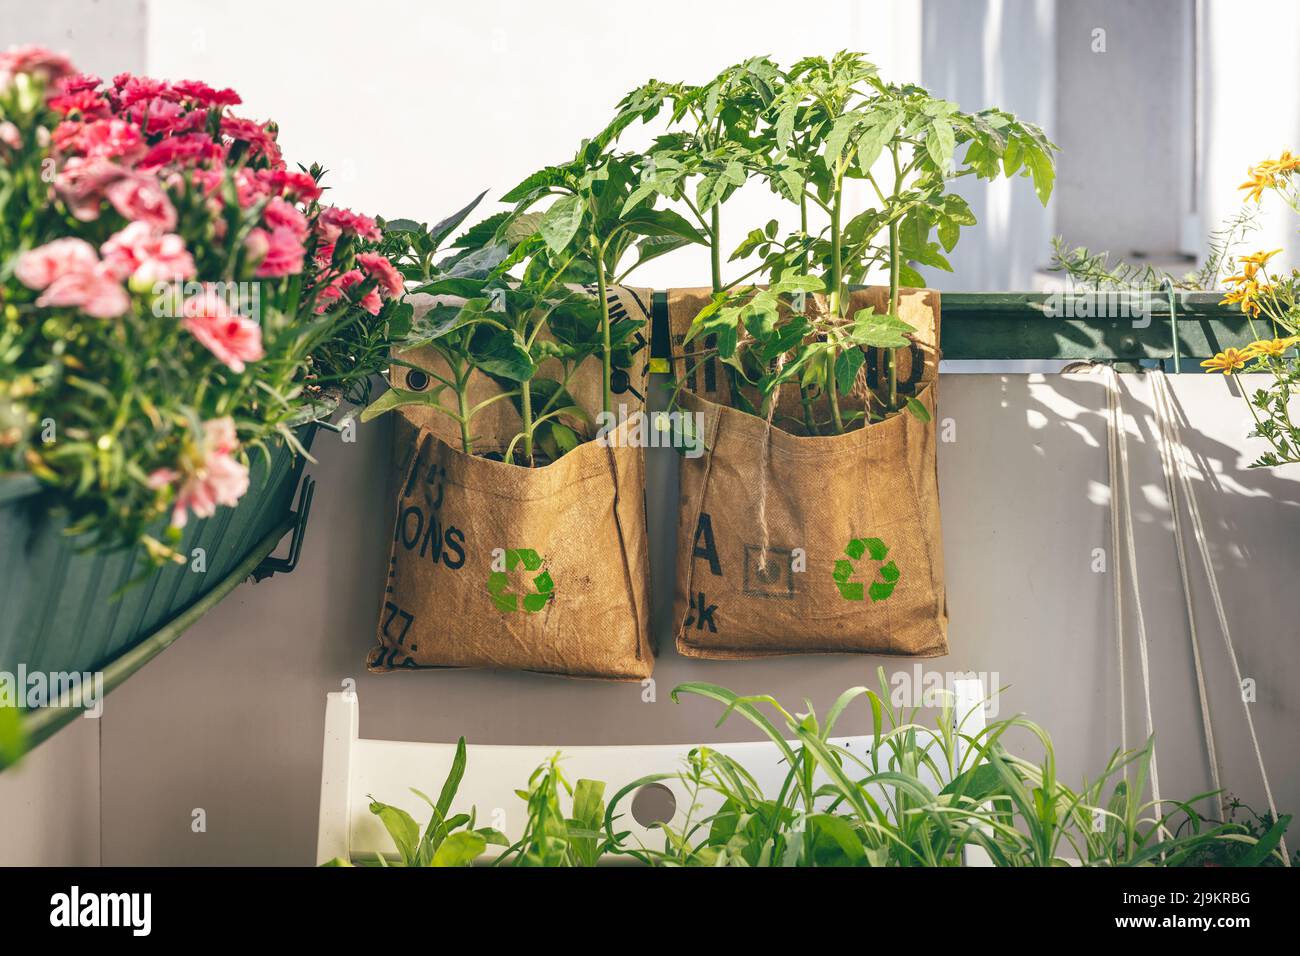 Los tomates y girasoles crecen en bolsas de plantas reutilizables en el balcón. Los tees-big-bags fueron reciclados por los trabajadores indios en la India. Consumo inteligente de productos Foto de stock